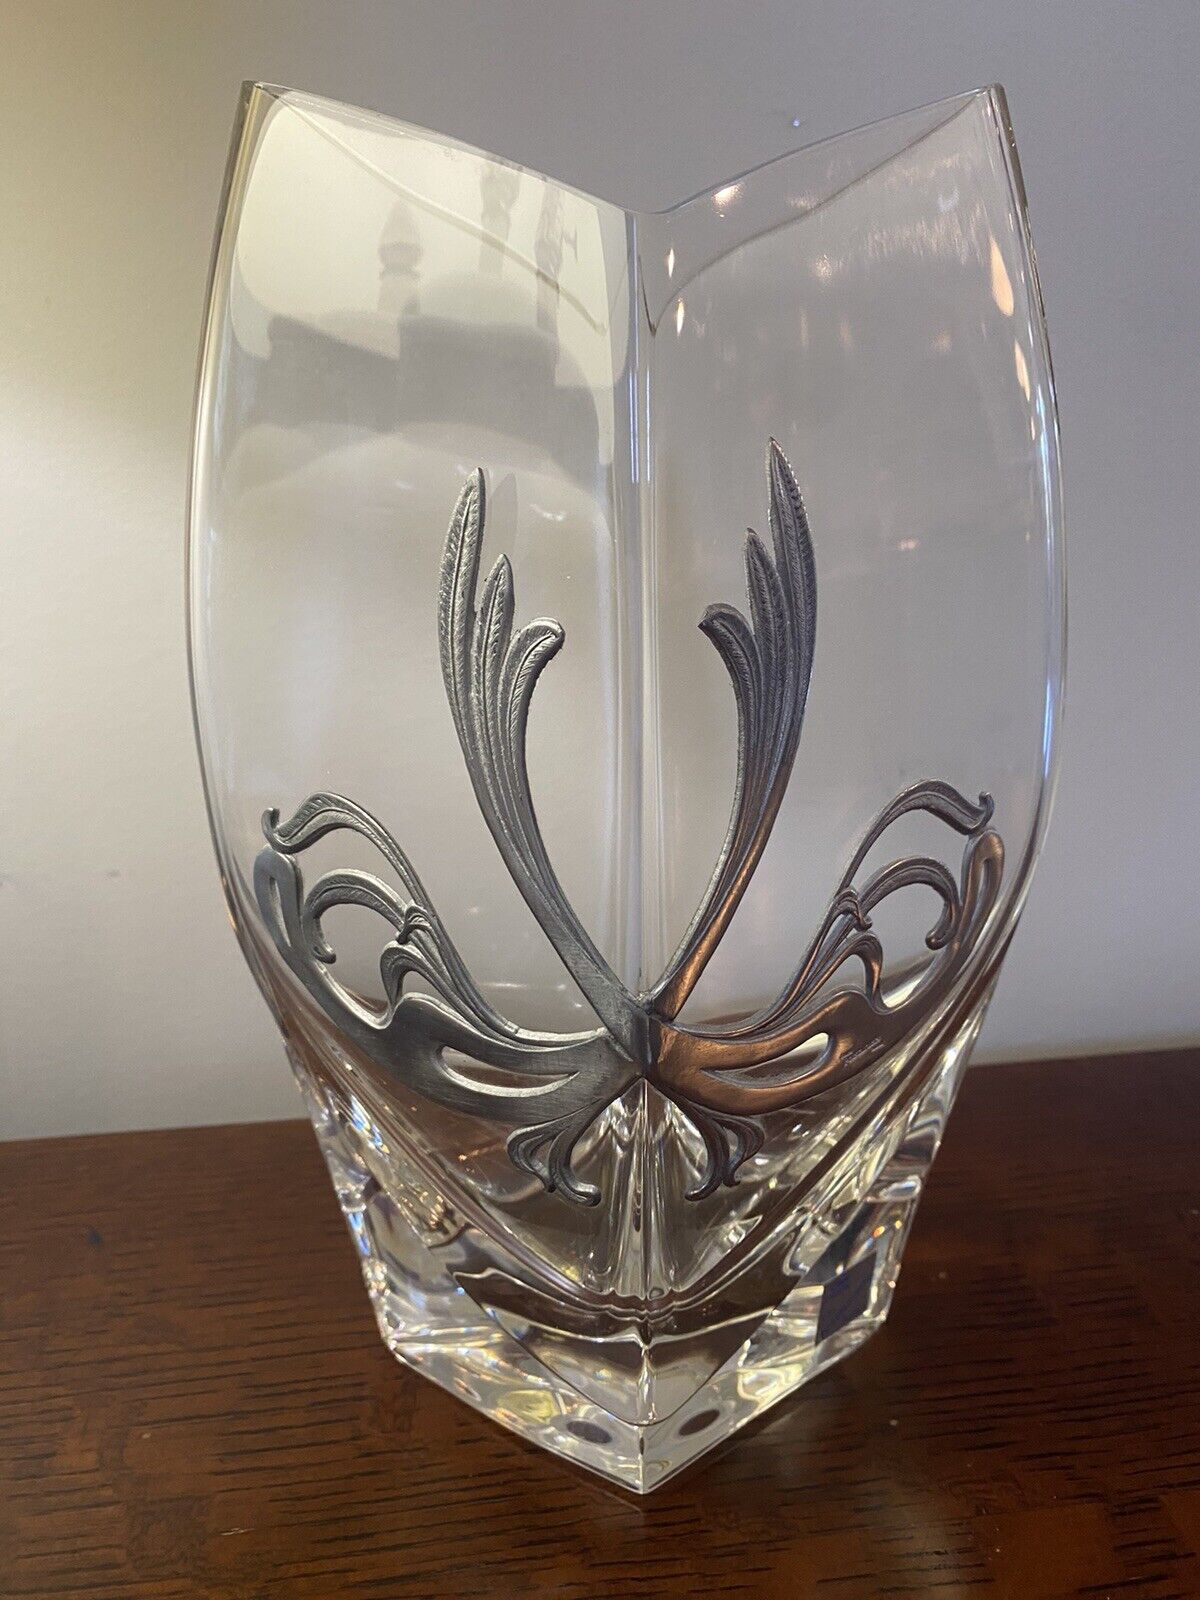 Les Etains Potstainiers Belgian Vase Pewter Crystal Signed Art Nouveau 9.5”